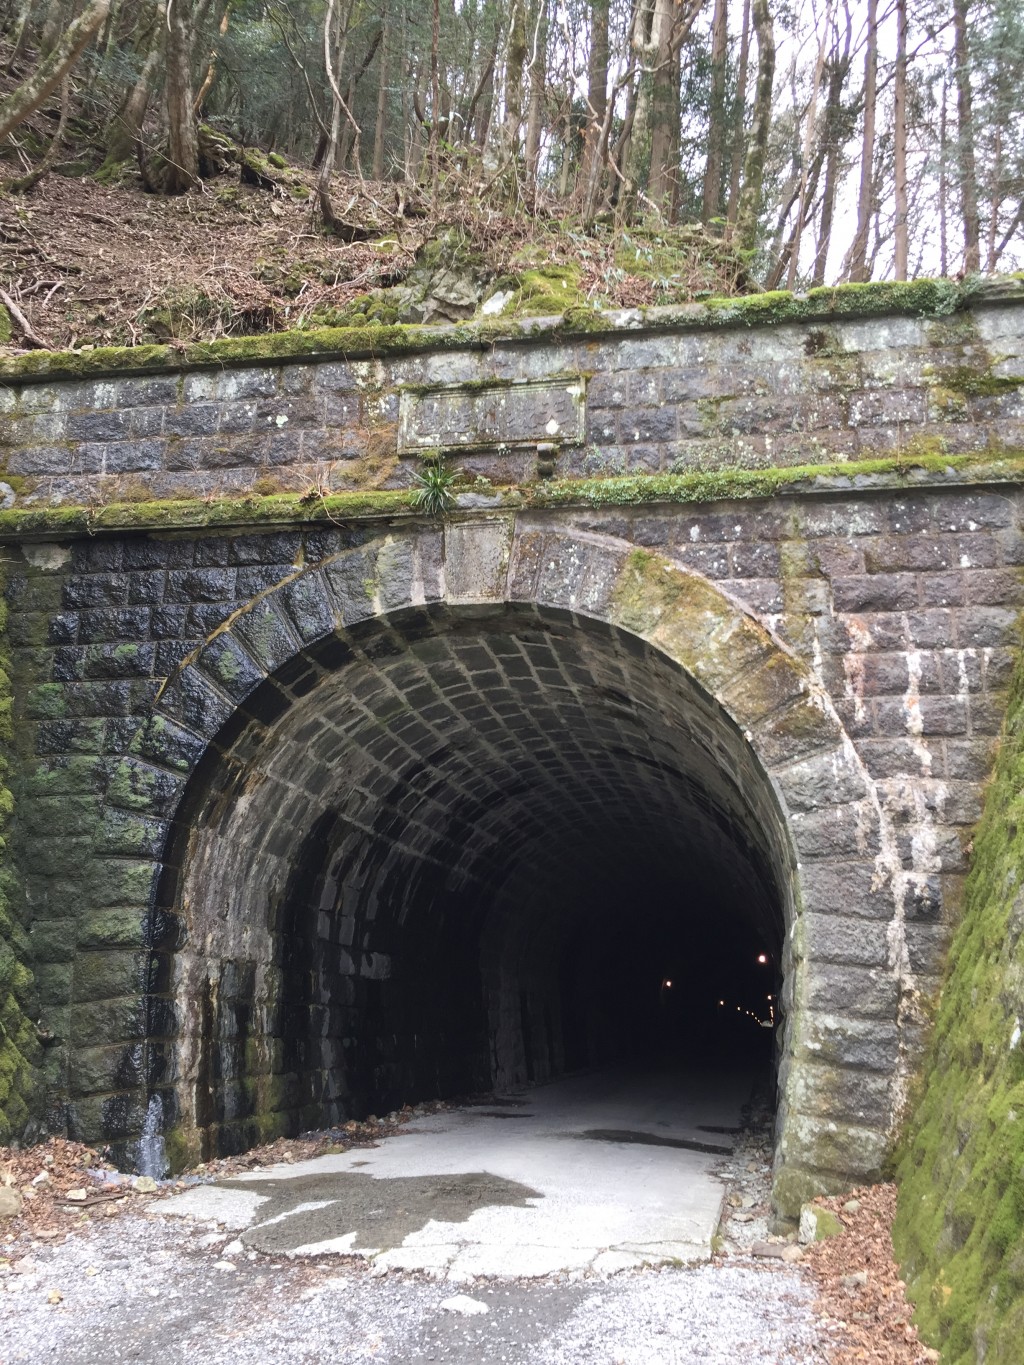 旧天城トンネル出口